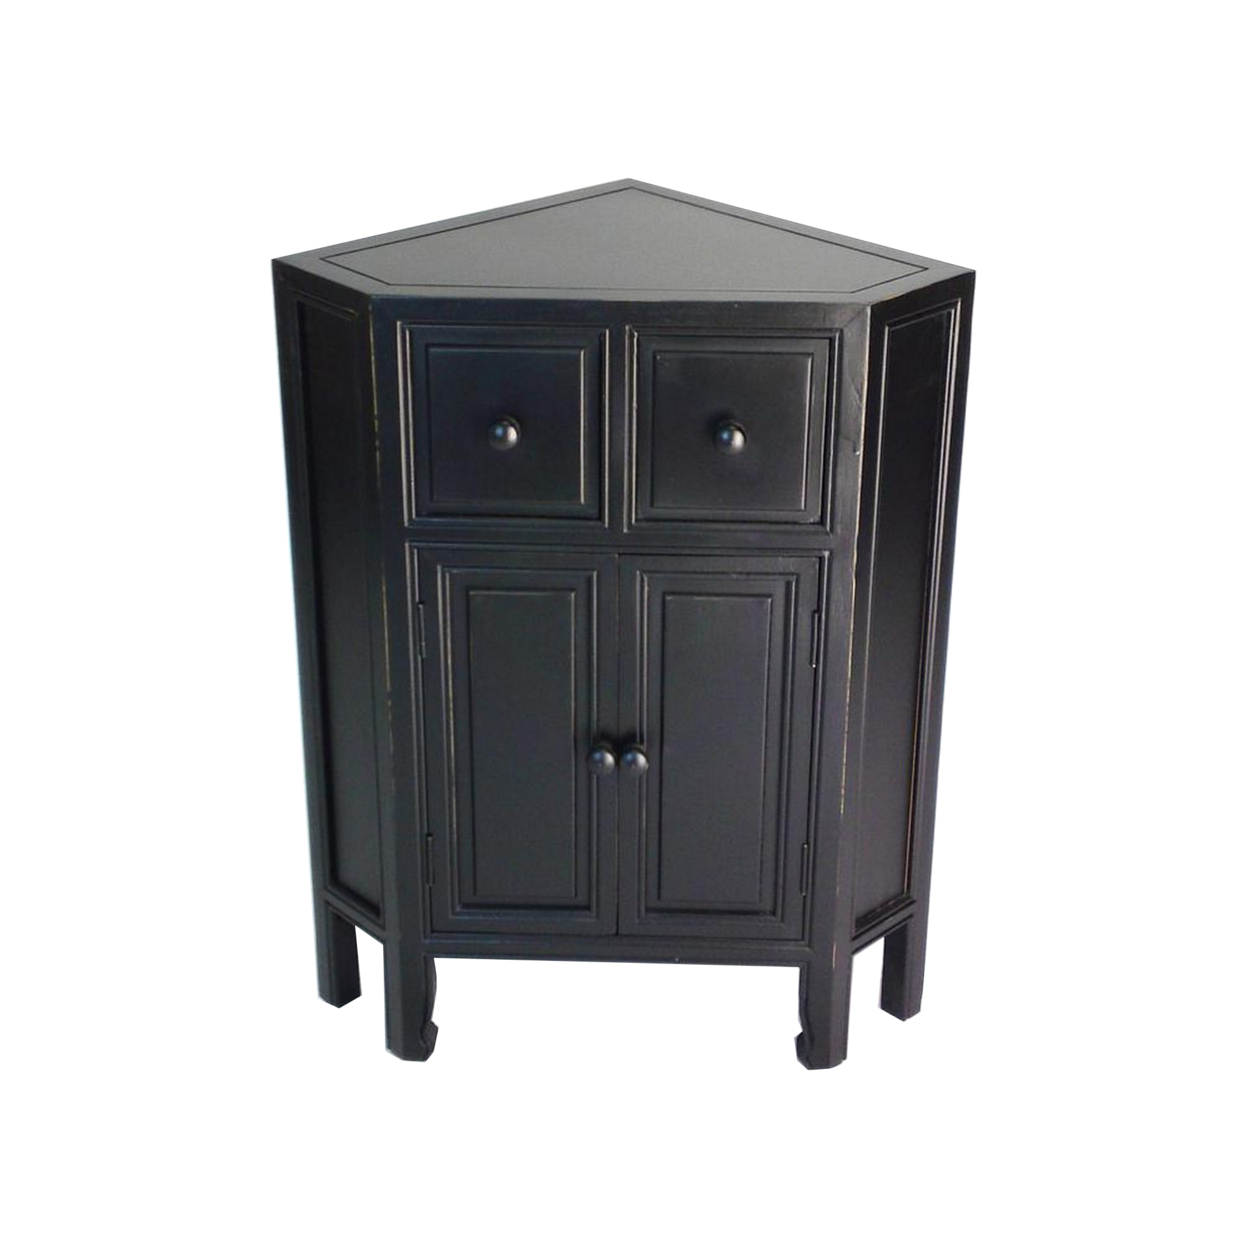 30 Inch Wooden 2 Door Corner Cabinet With 2 Drawers, Black - Saltoro Sherpi